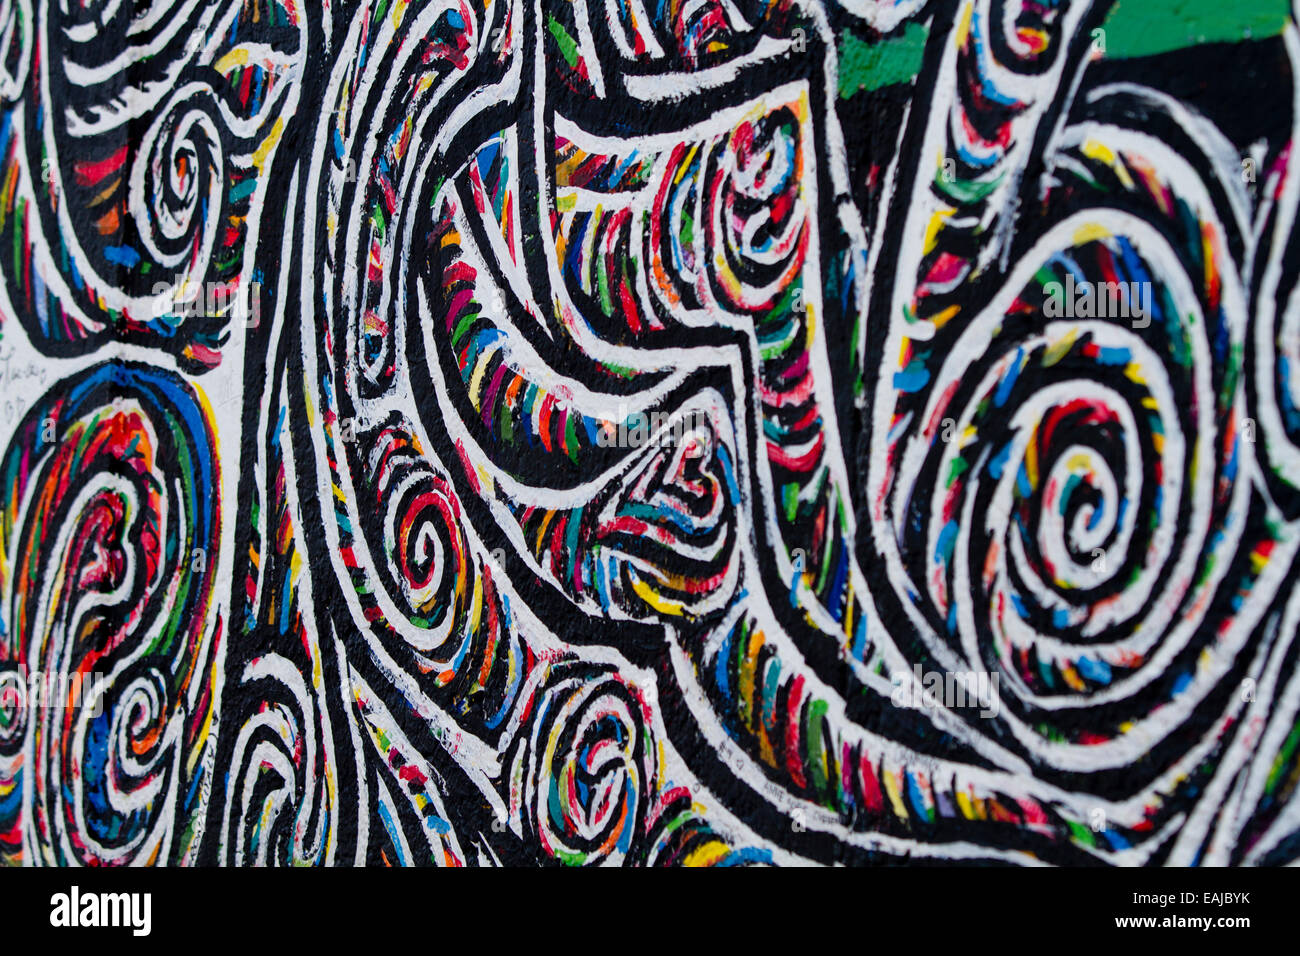 Graffiti swirling patterns colourful Berlin art Stock Photo